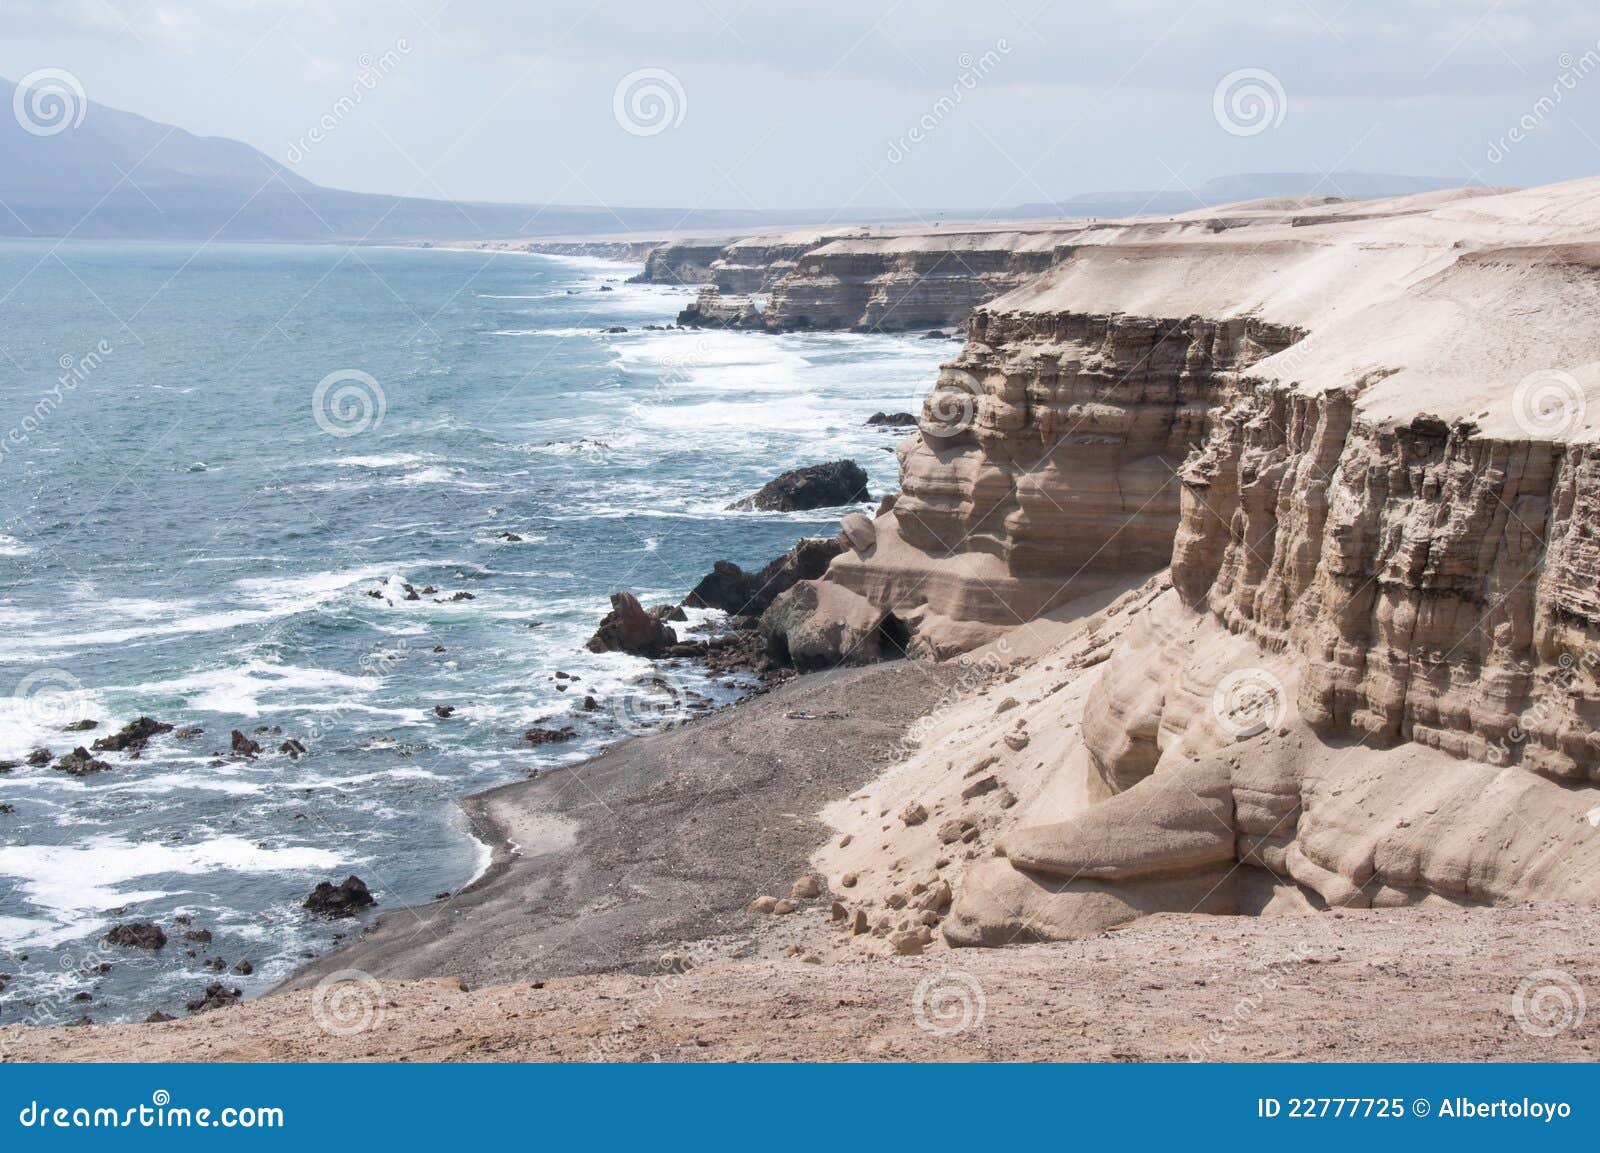 cliffs near la portada natural monument, chile